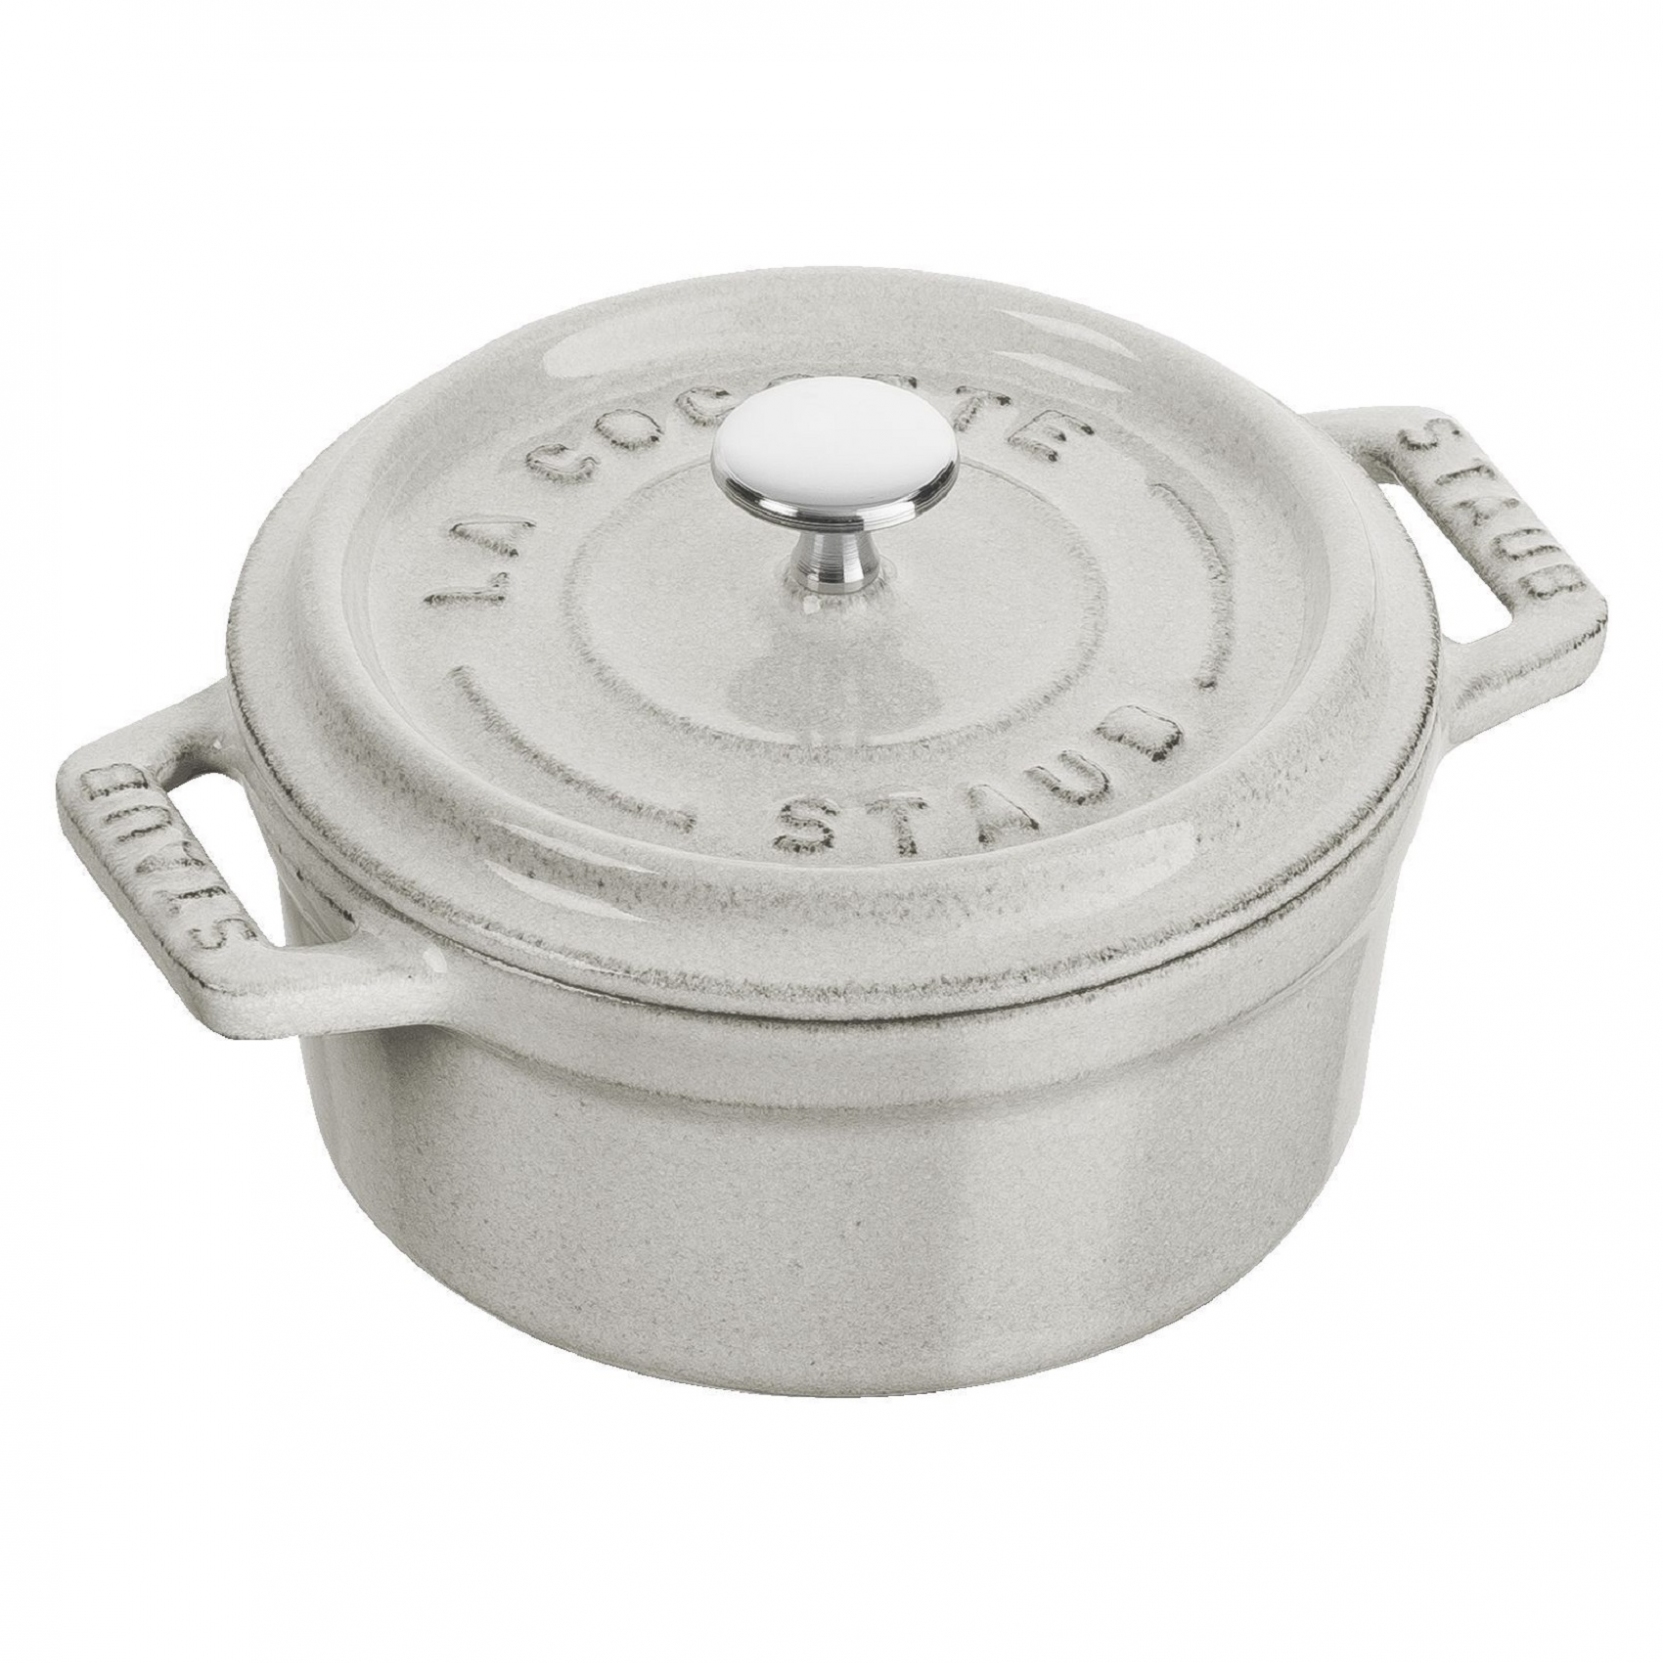 Brand New: Staub 4 qt Cast Iron Round Cocotte (Dutch oven) - White